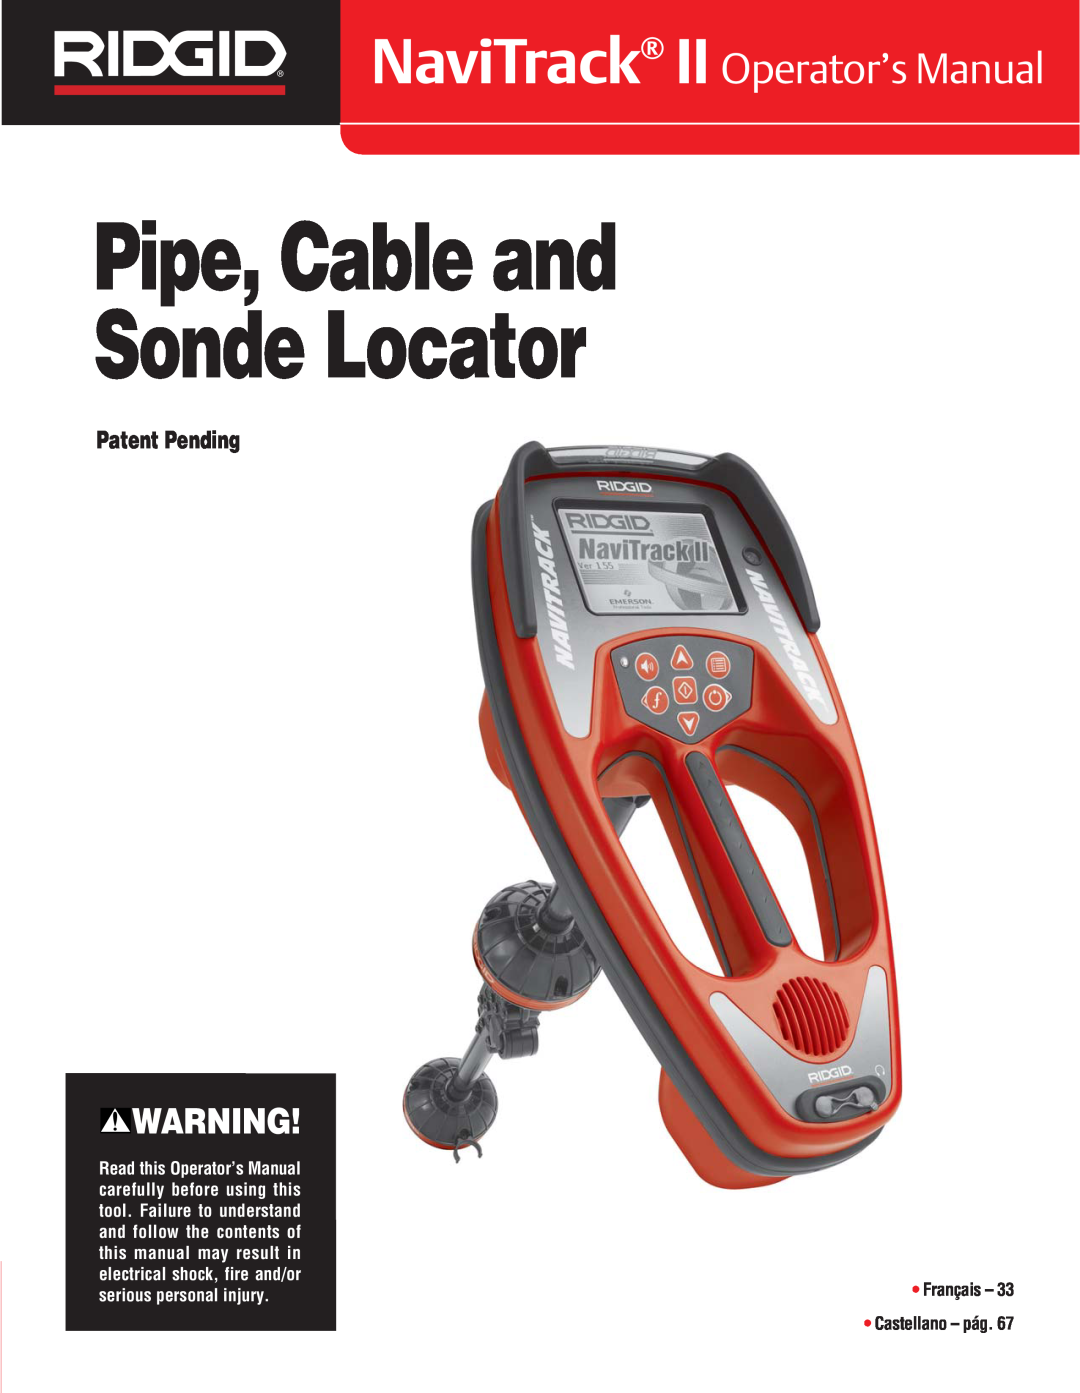 RIDGID Metal Detector manual Pipe, Cable and Sonde Locator, NaviTrack II Operator’s Manual, Patent Pending 